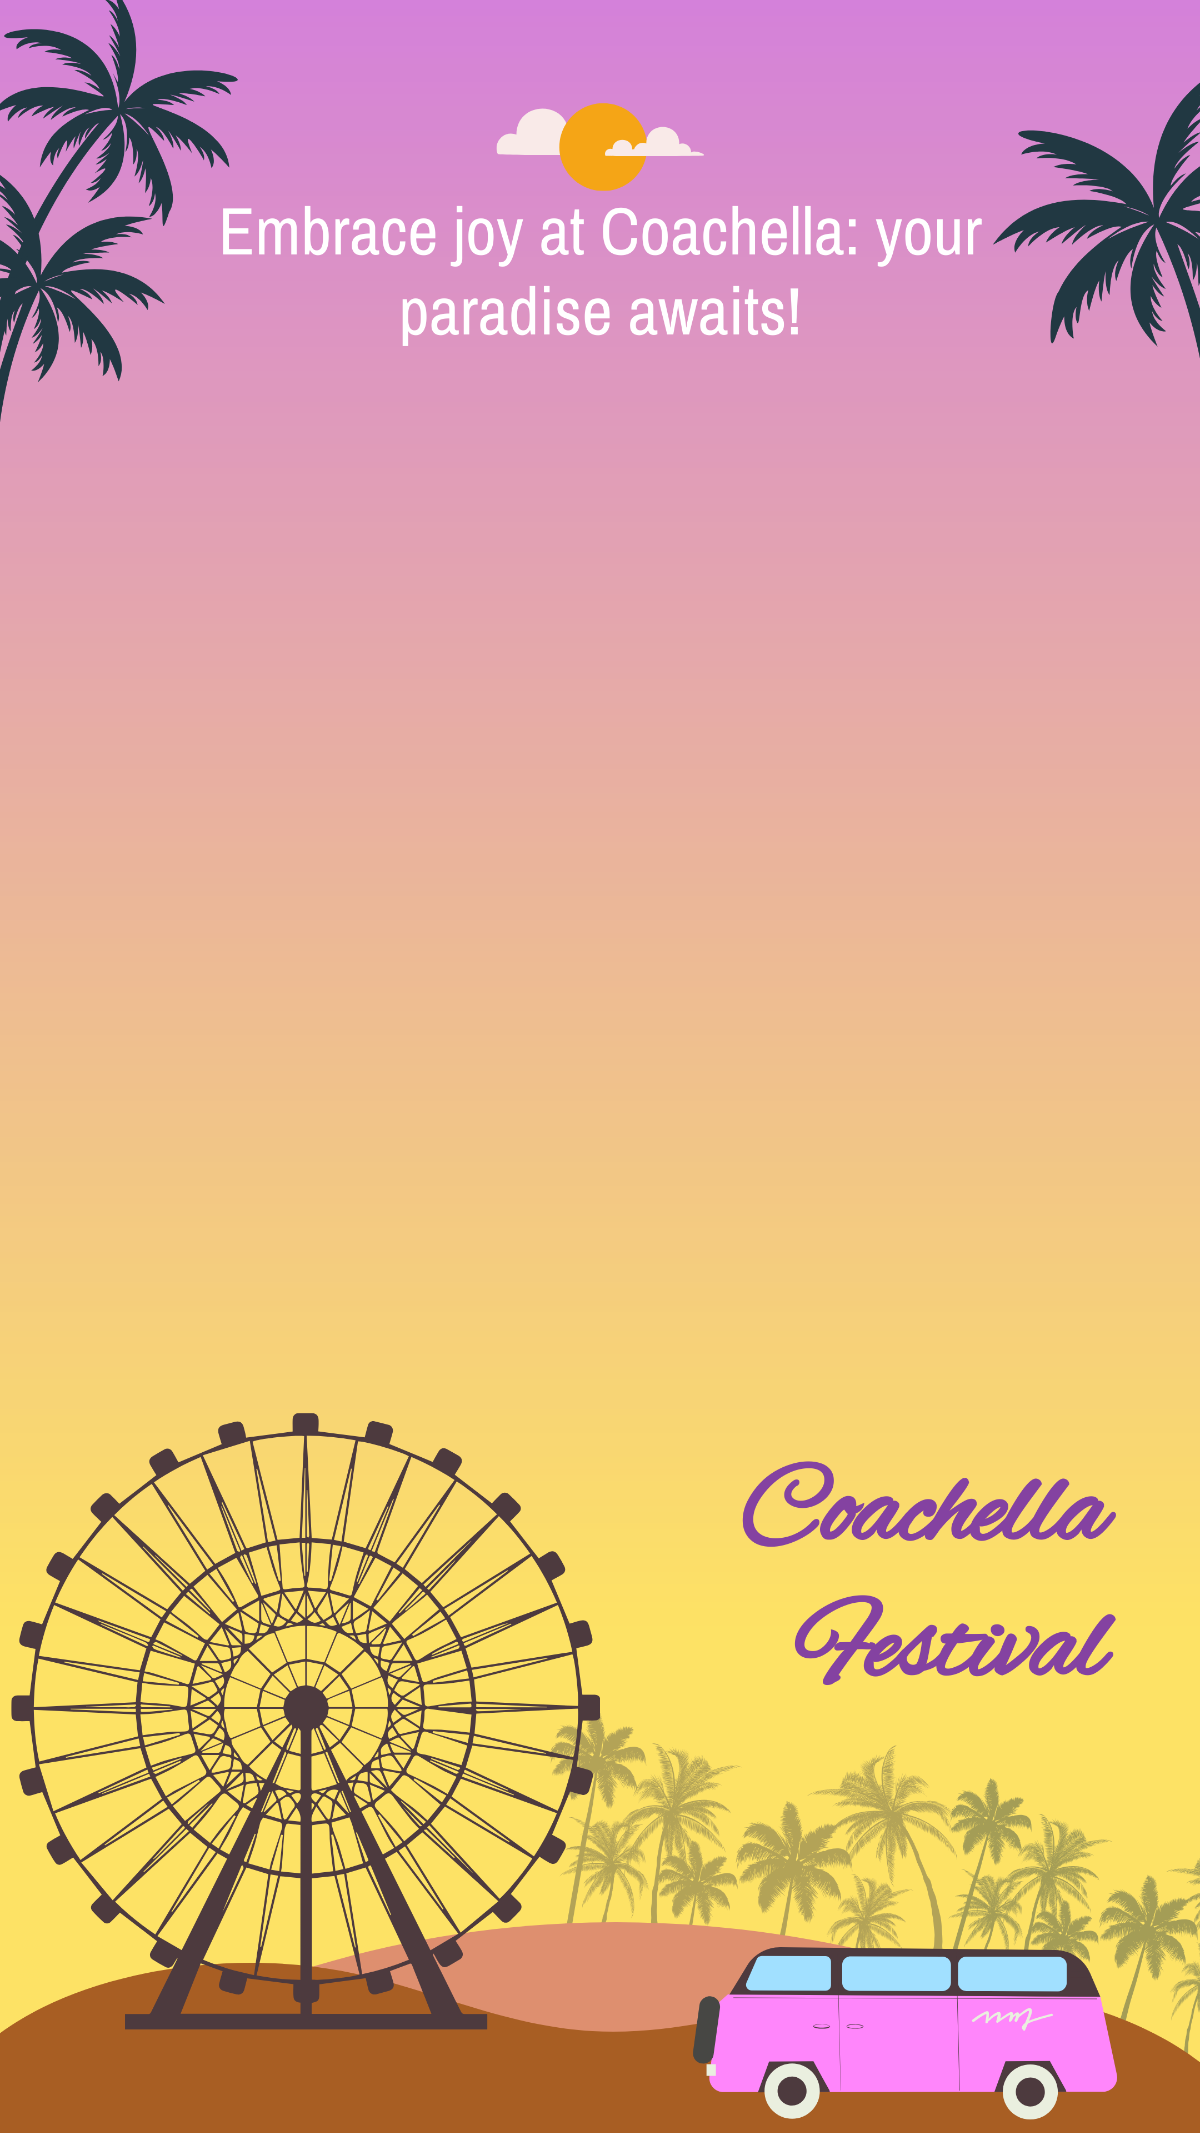 Coachella Festival Snapchat Geofilter